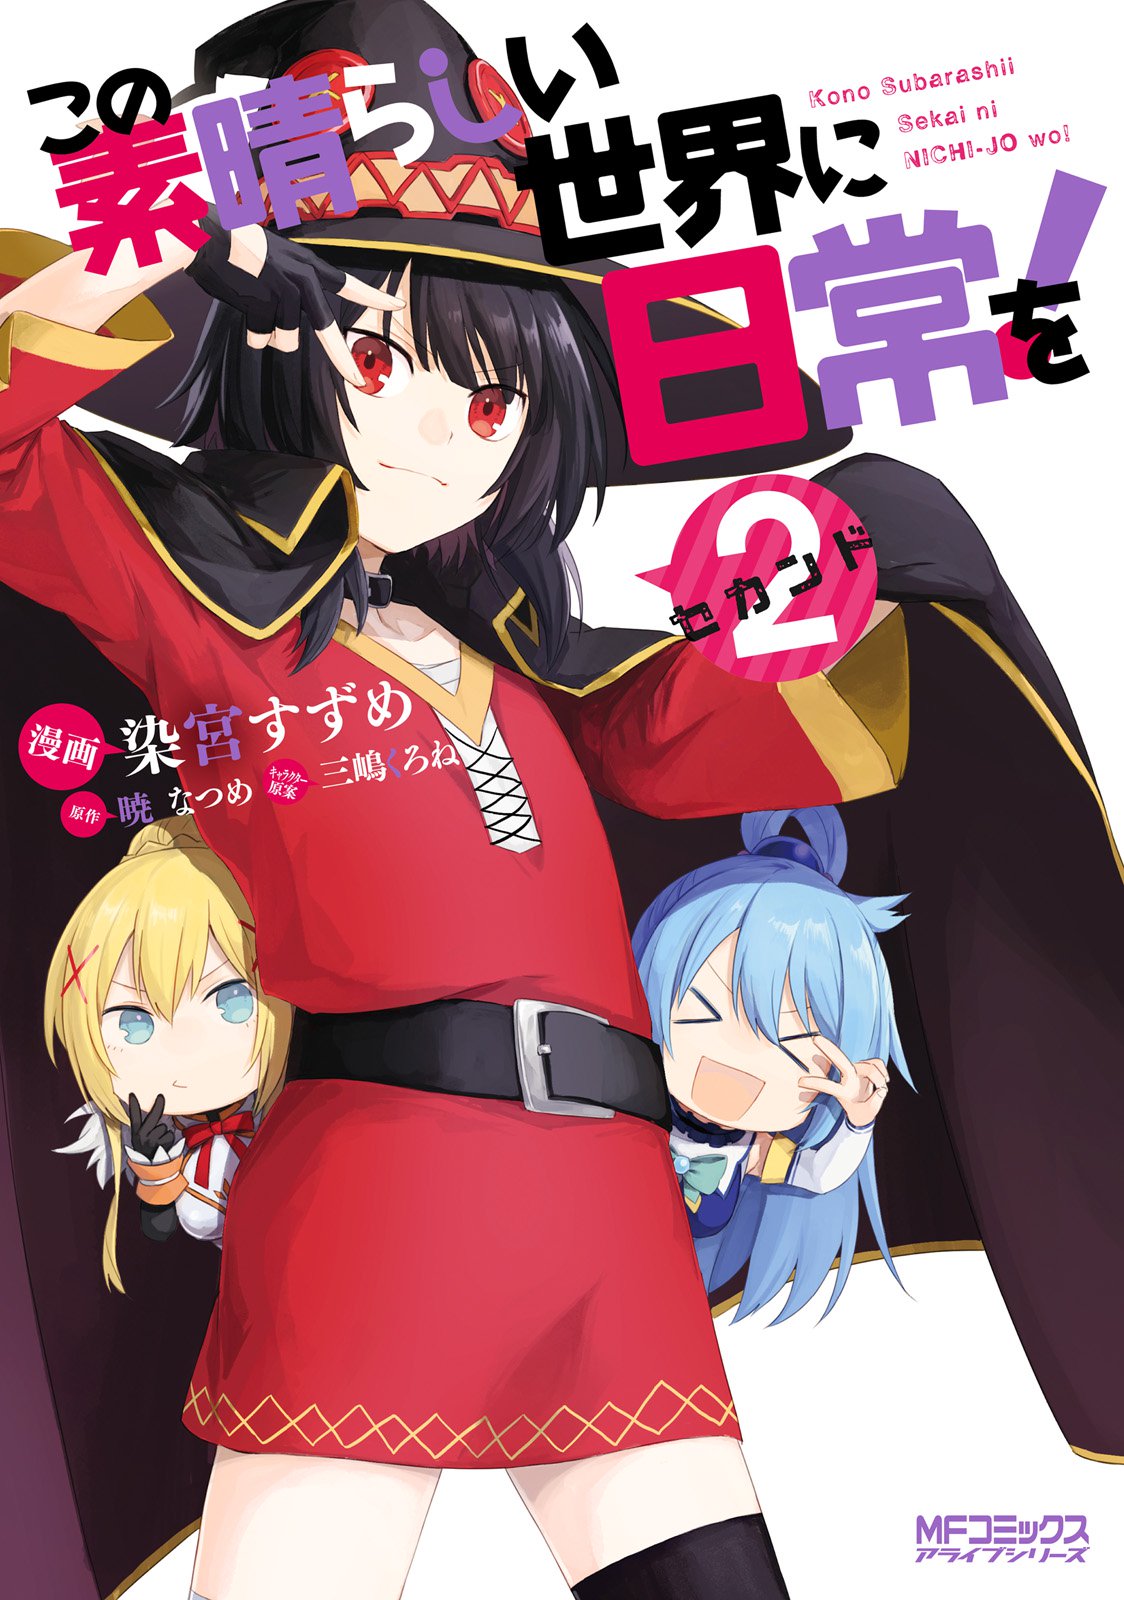 Konosuba Nichijou Manga Volume 2 | Kono Subarashii Sekai ni Shukufuku